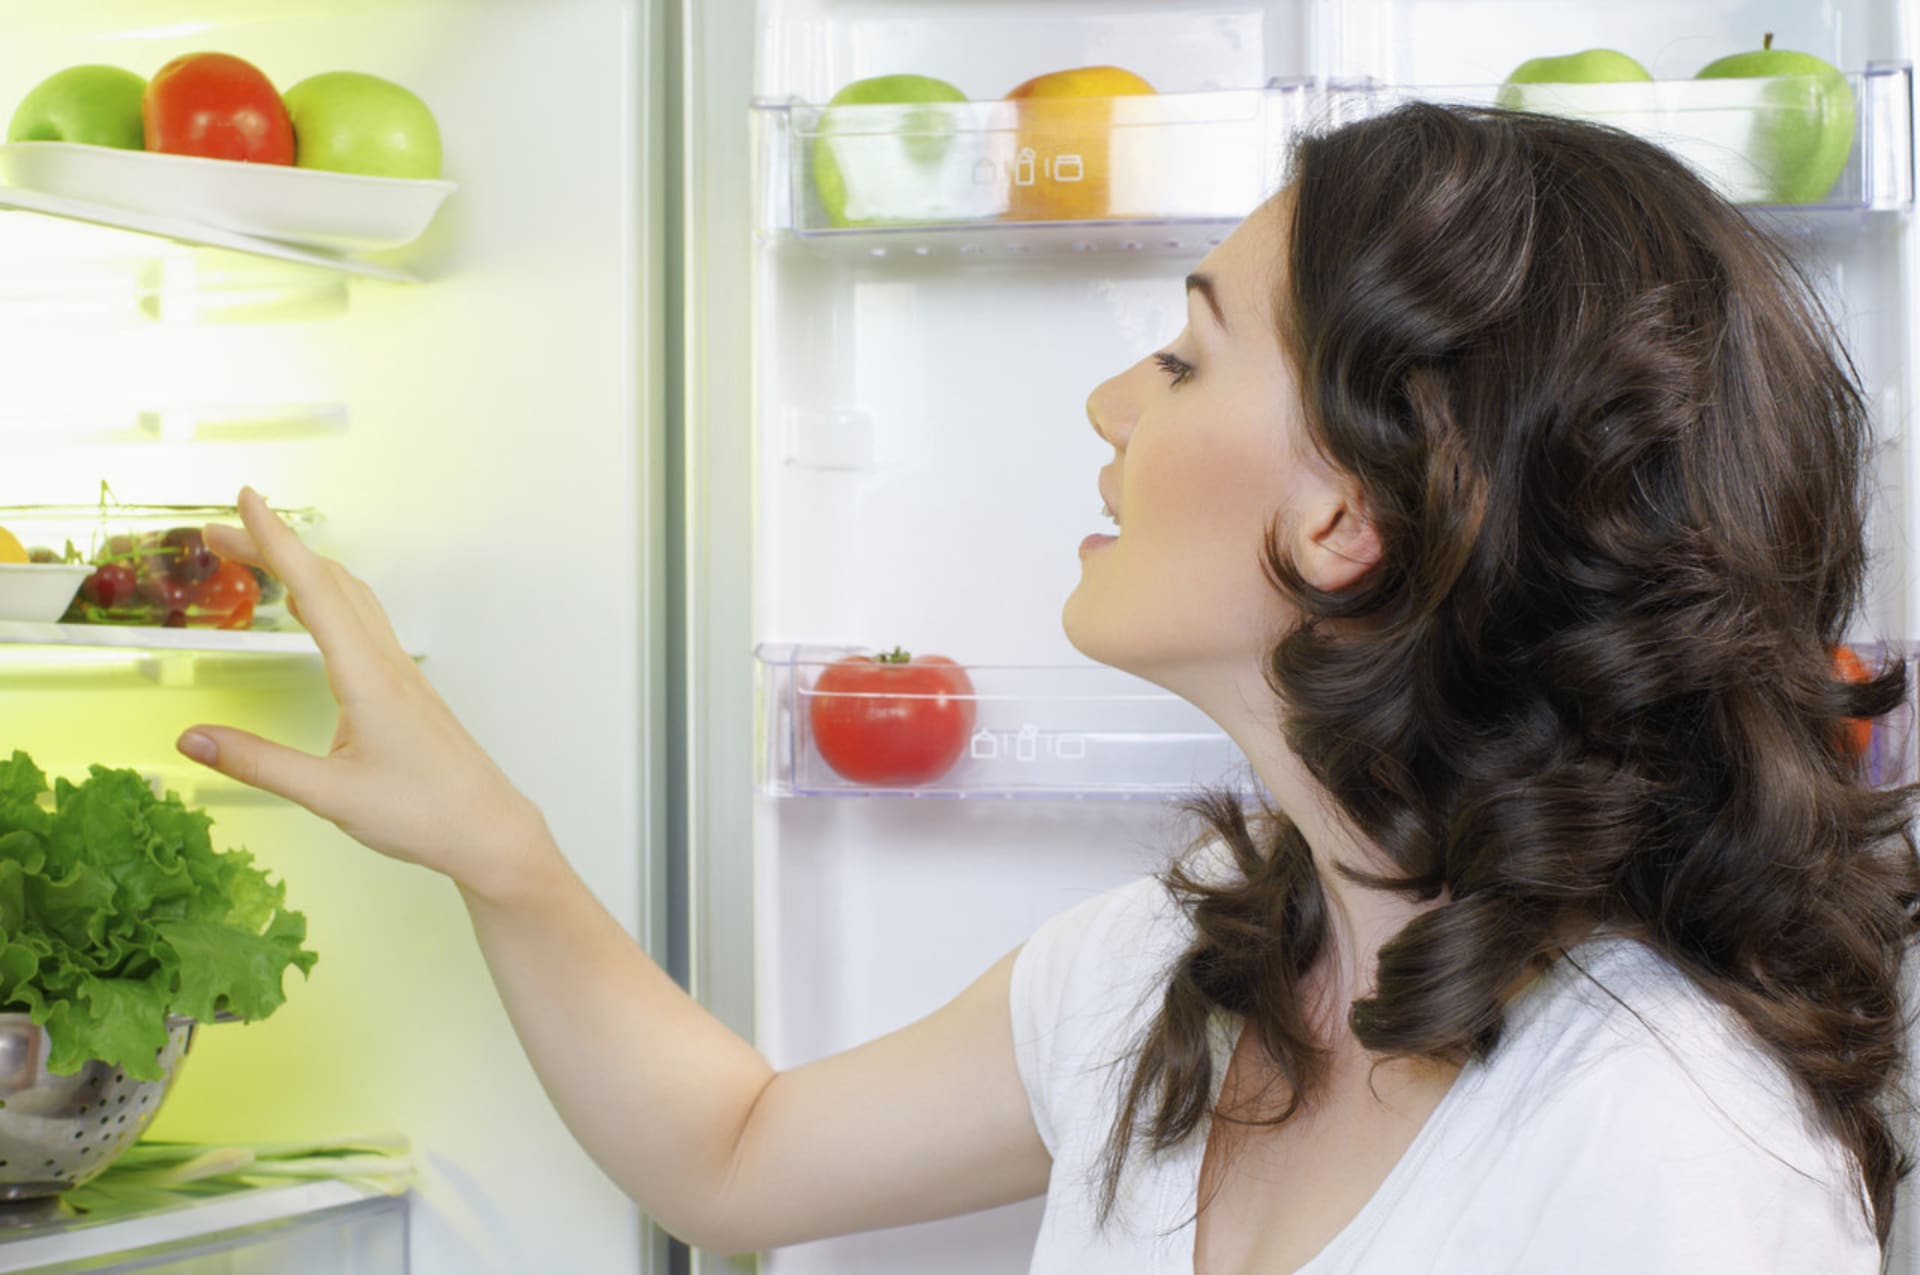 Lednici nenechávejte dlouho otevřenou a potraviny v ní skladujte efektivně